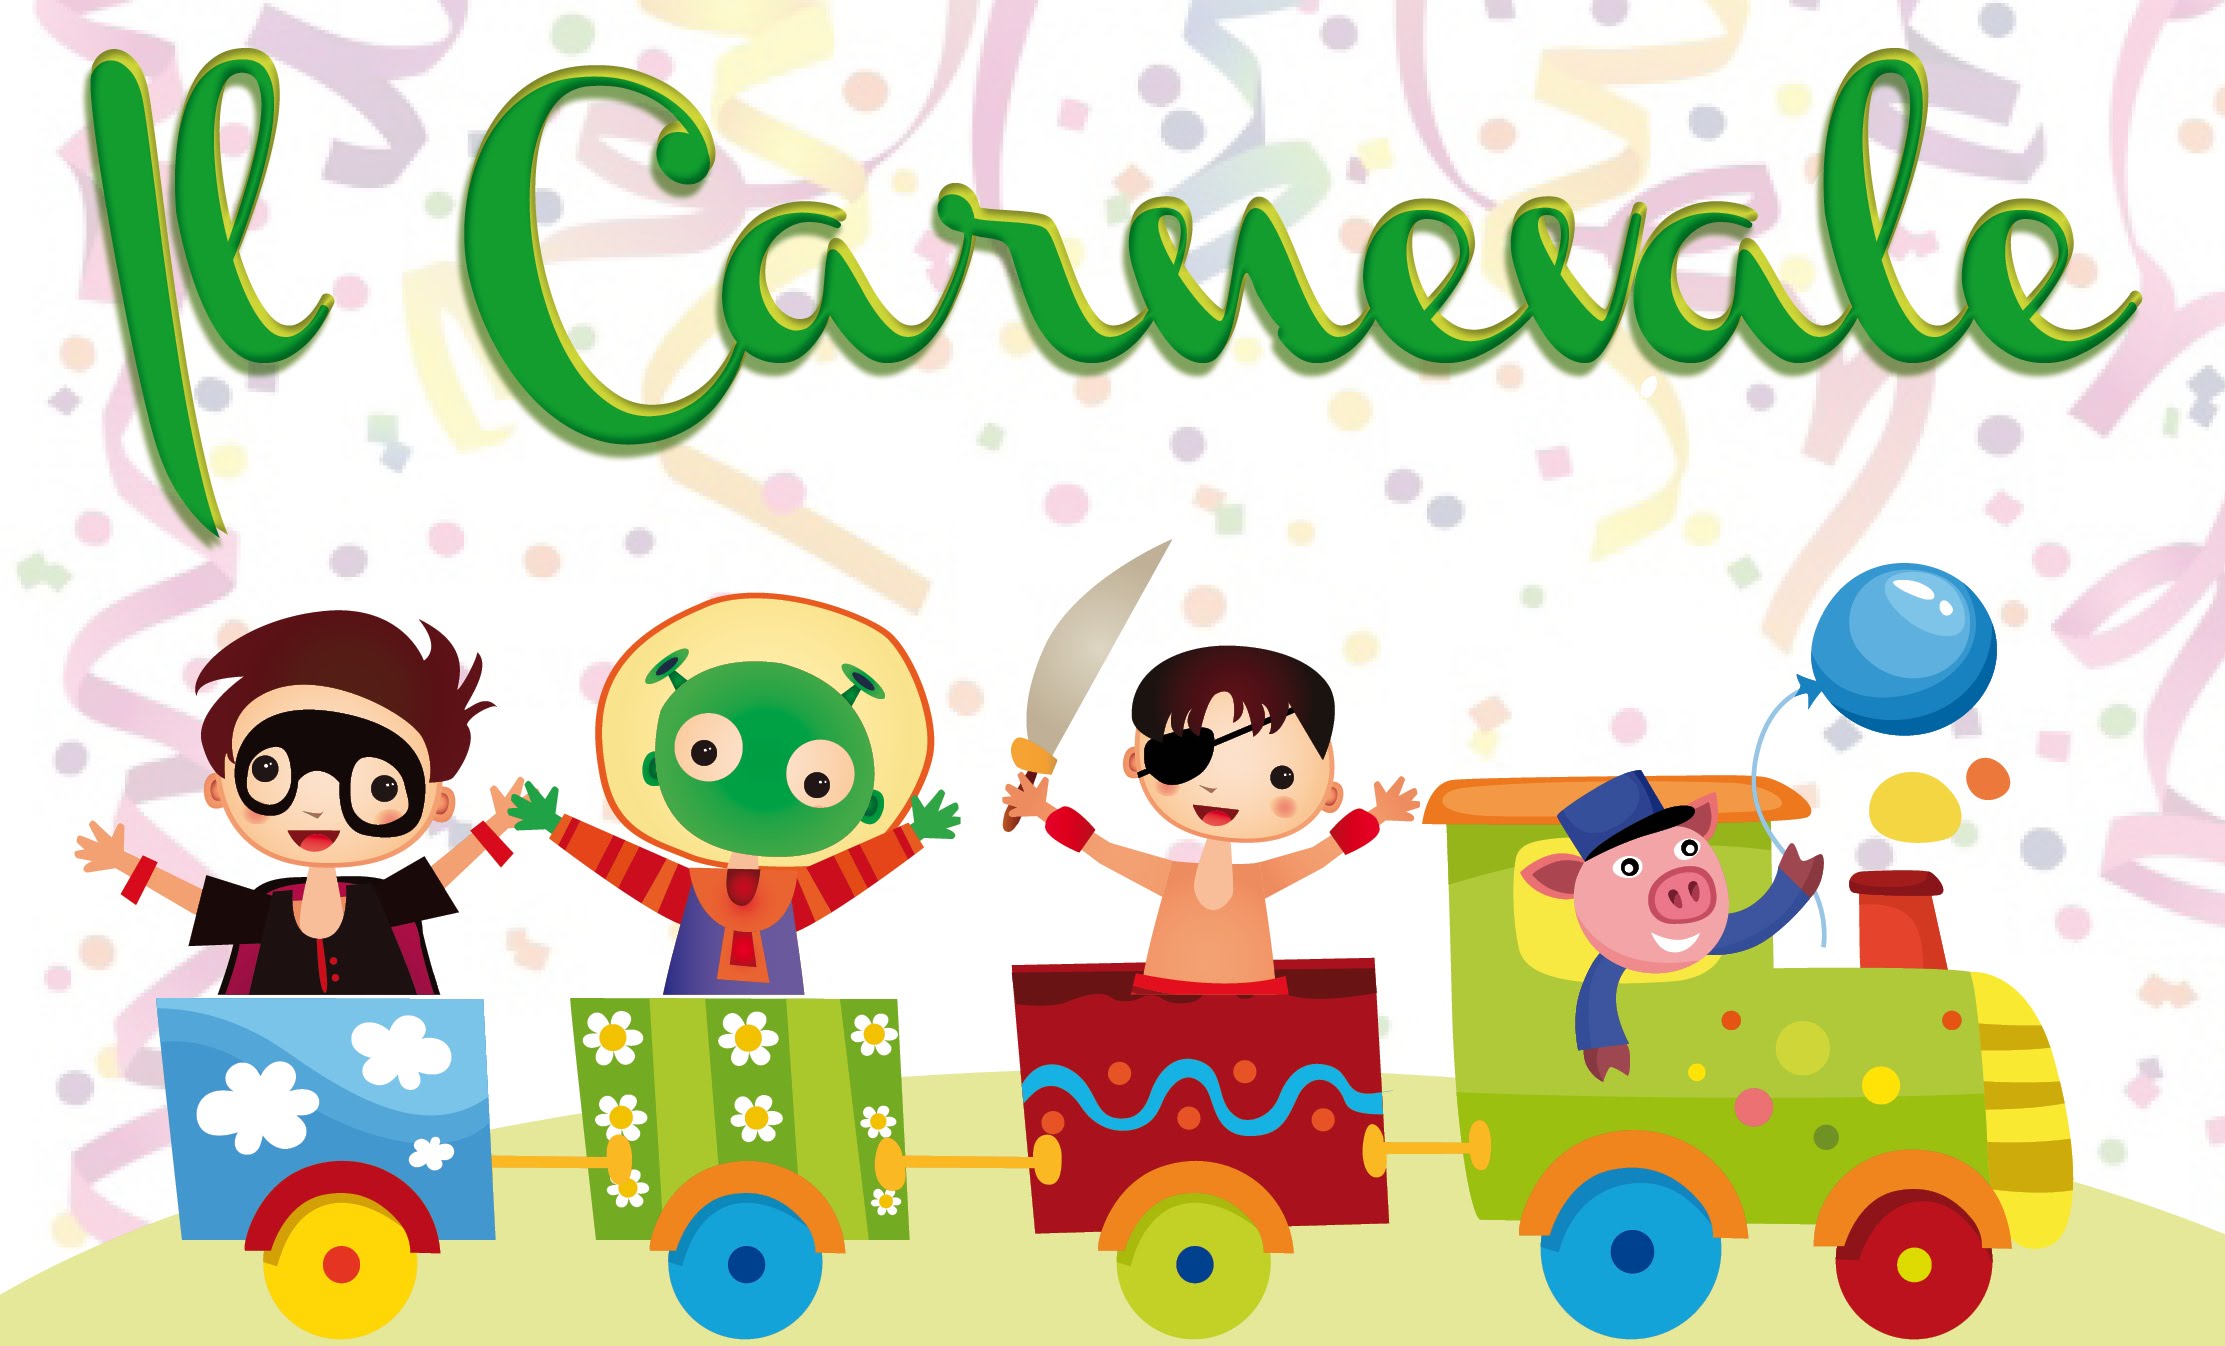 Carnevale all'infanzia Munari